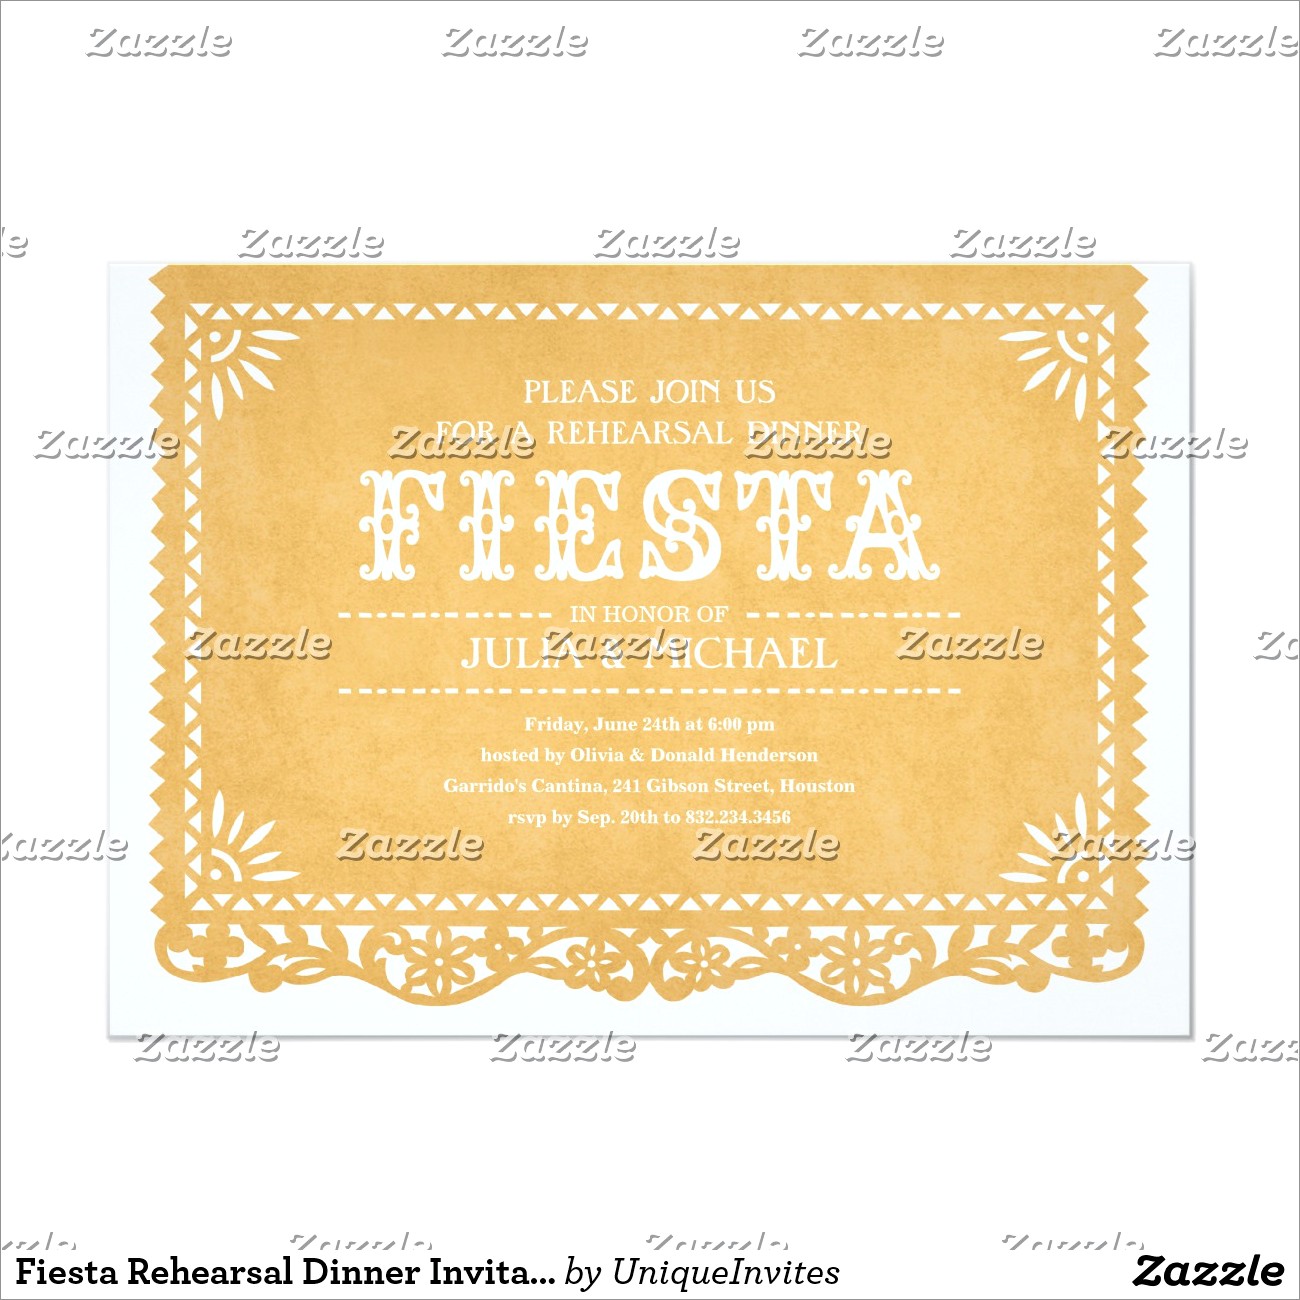 Fiesta Rehearsal Dinner Invitations